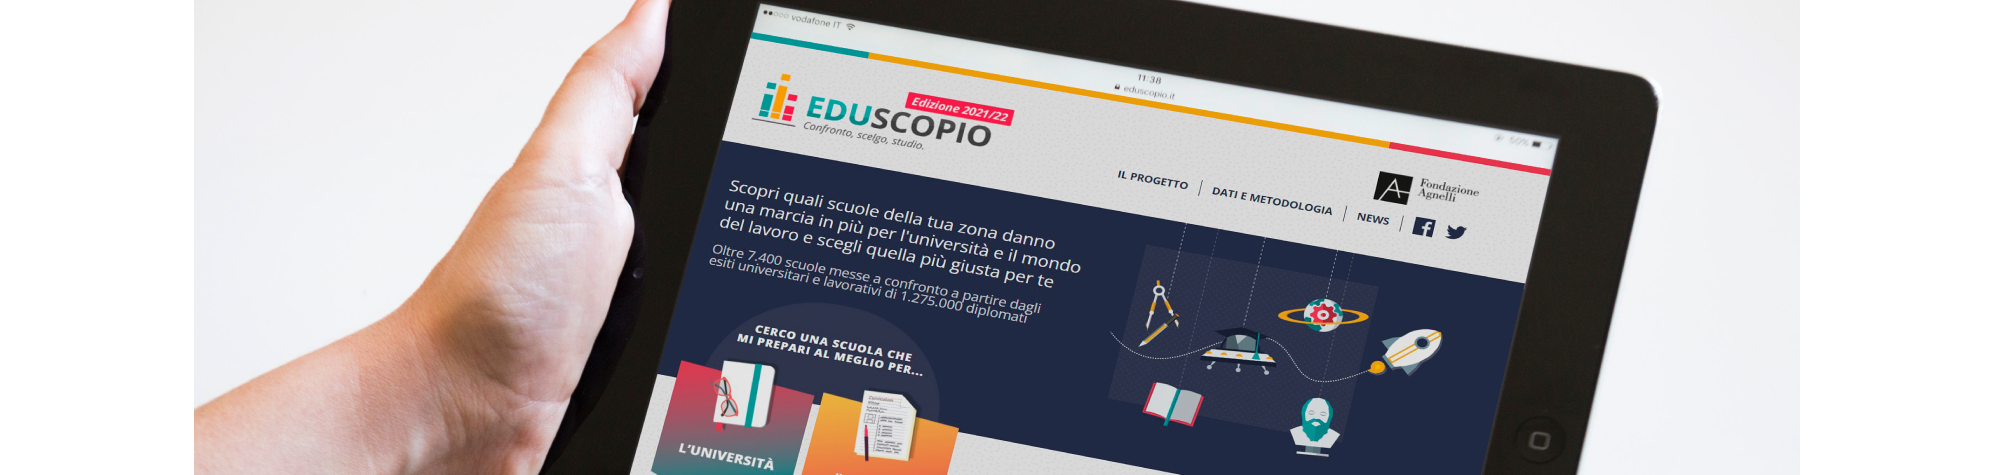 Eduscopio 2021-22 is online